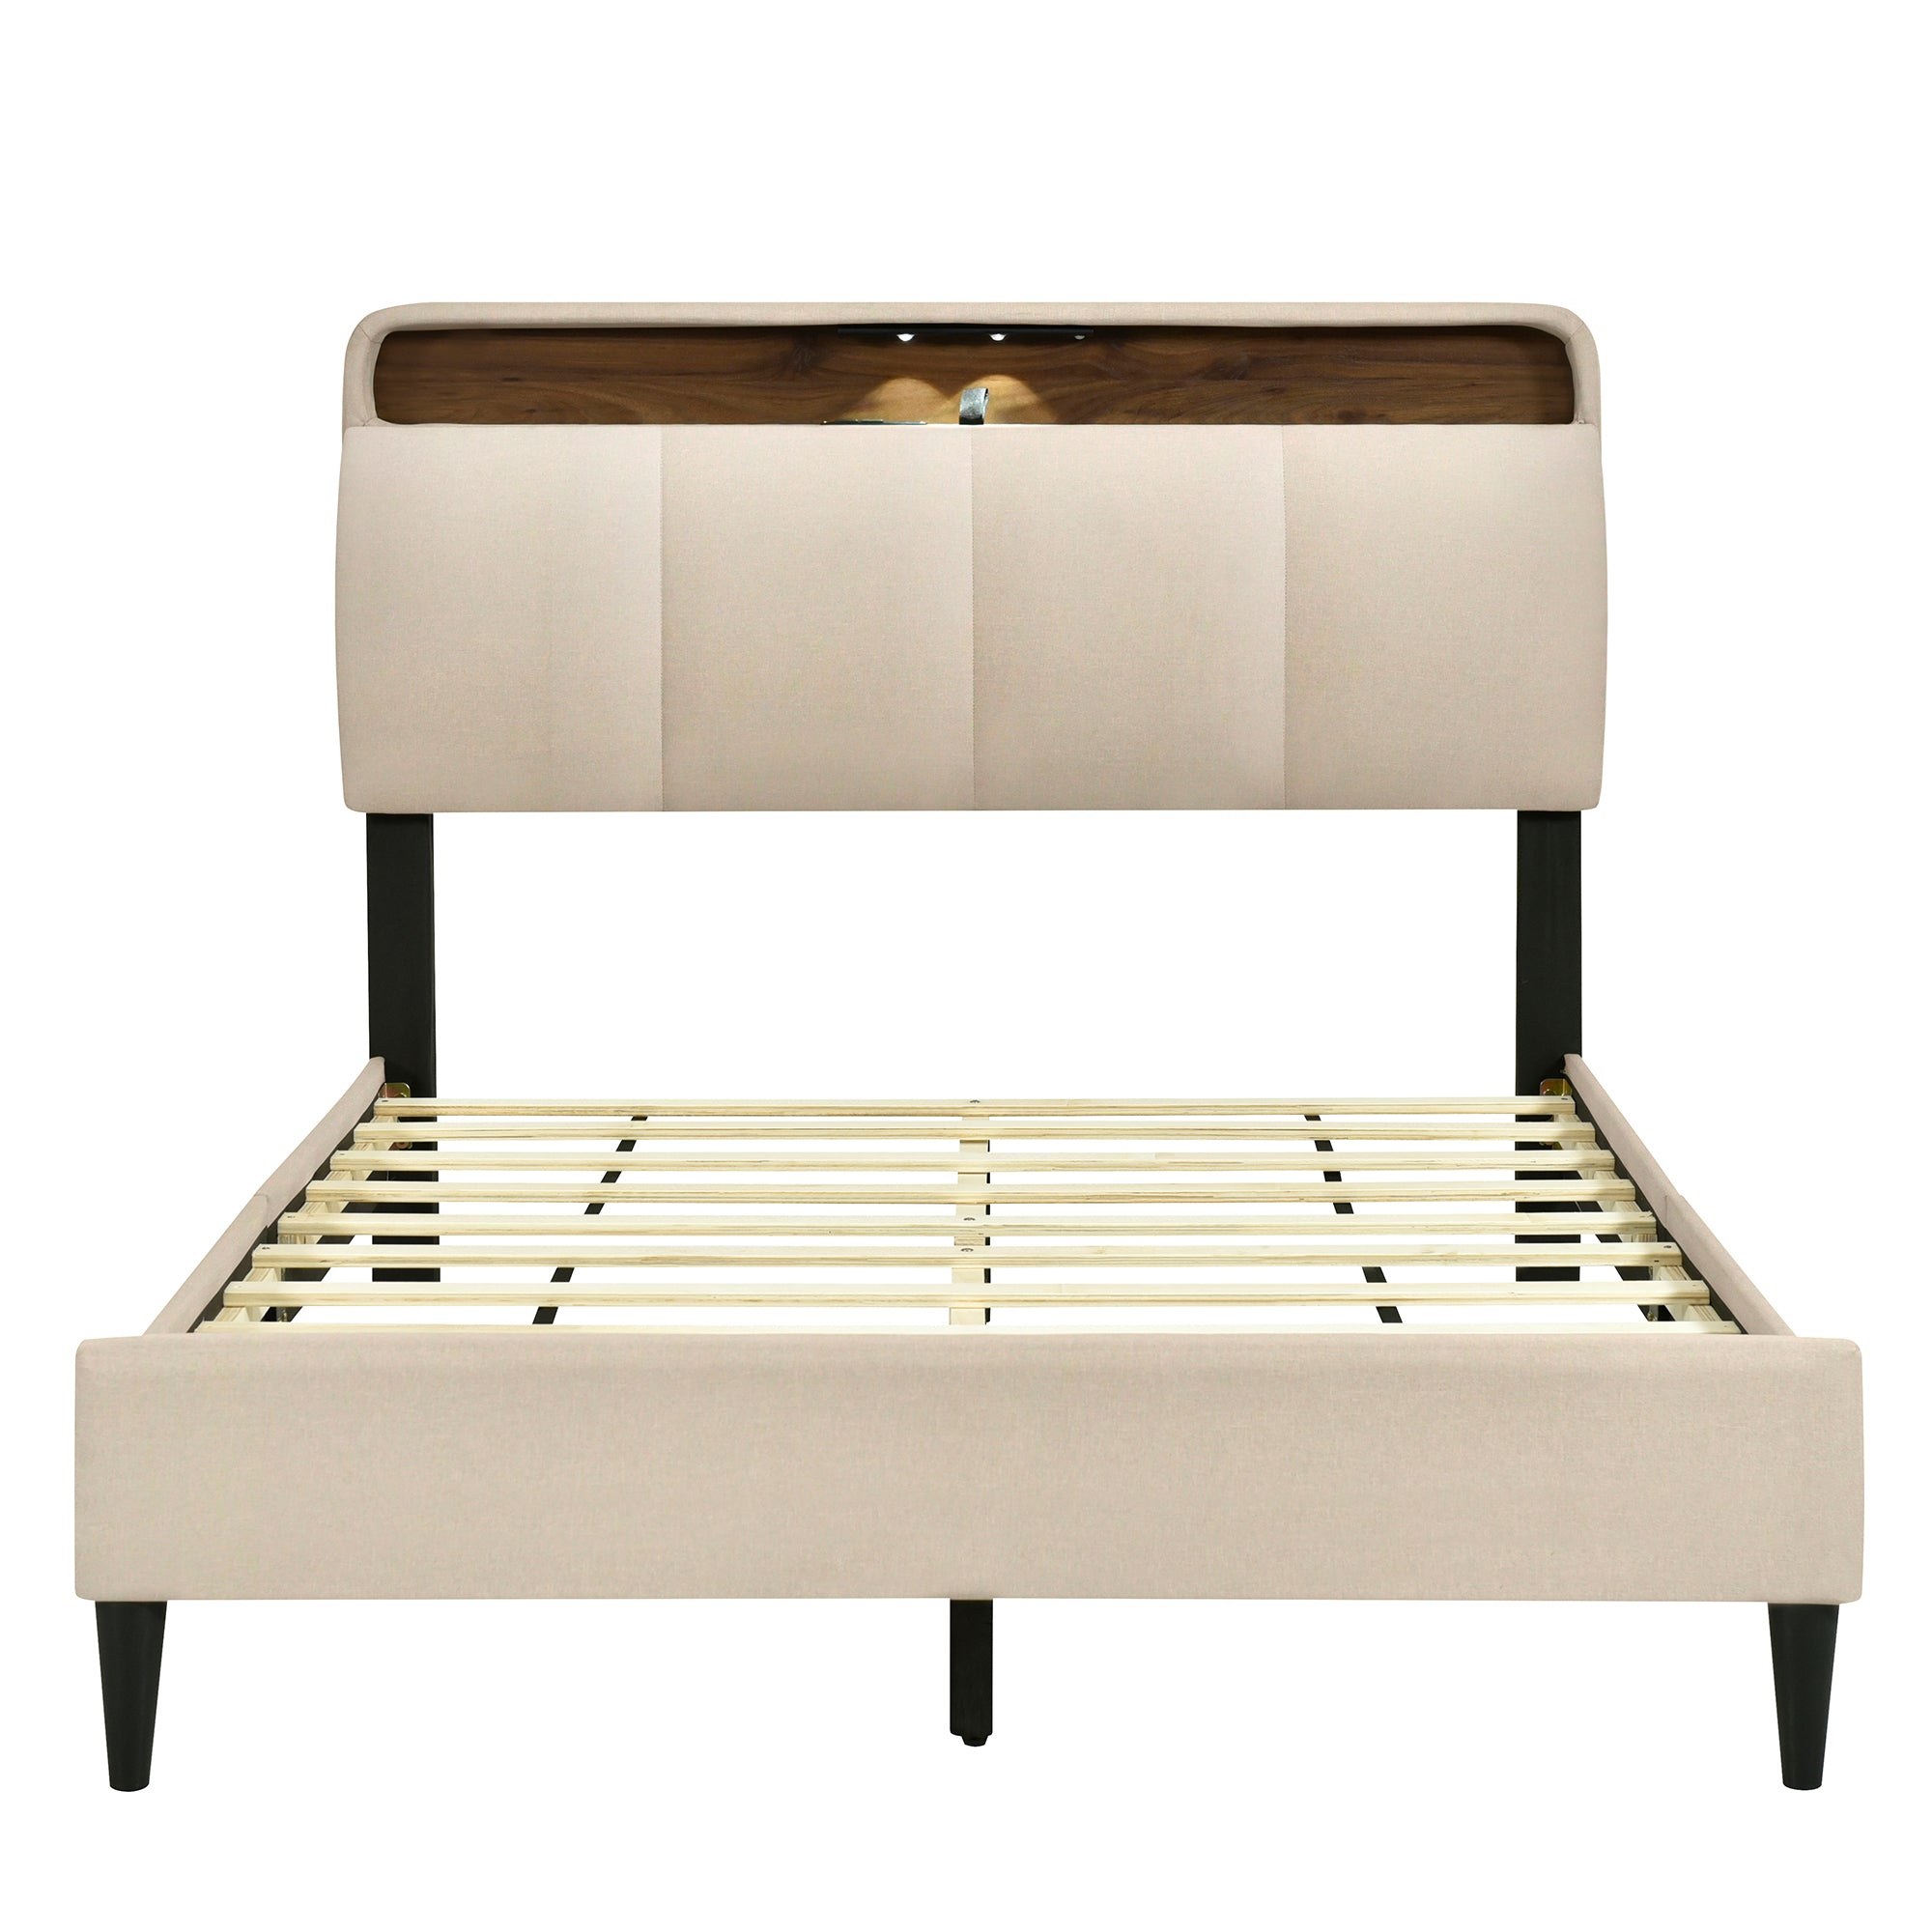 Full size Upholstered Platform Bed with Storage beige-linen